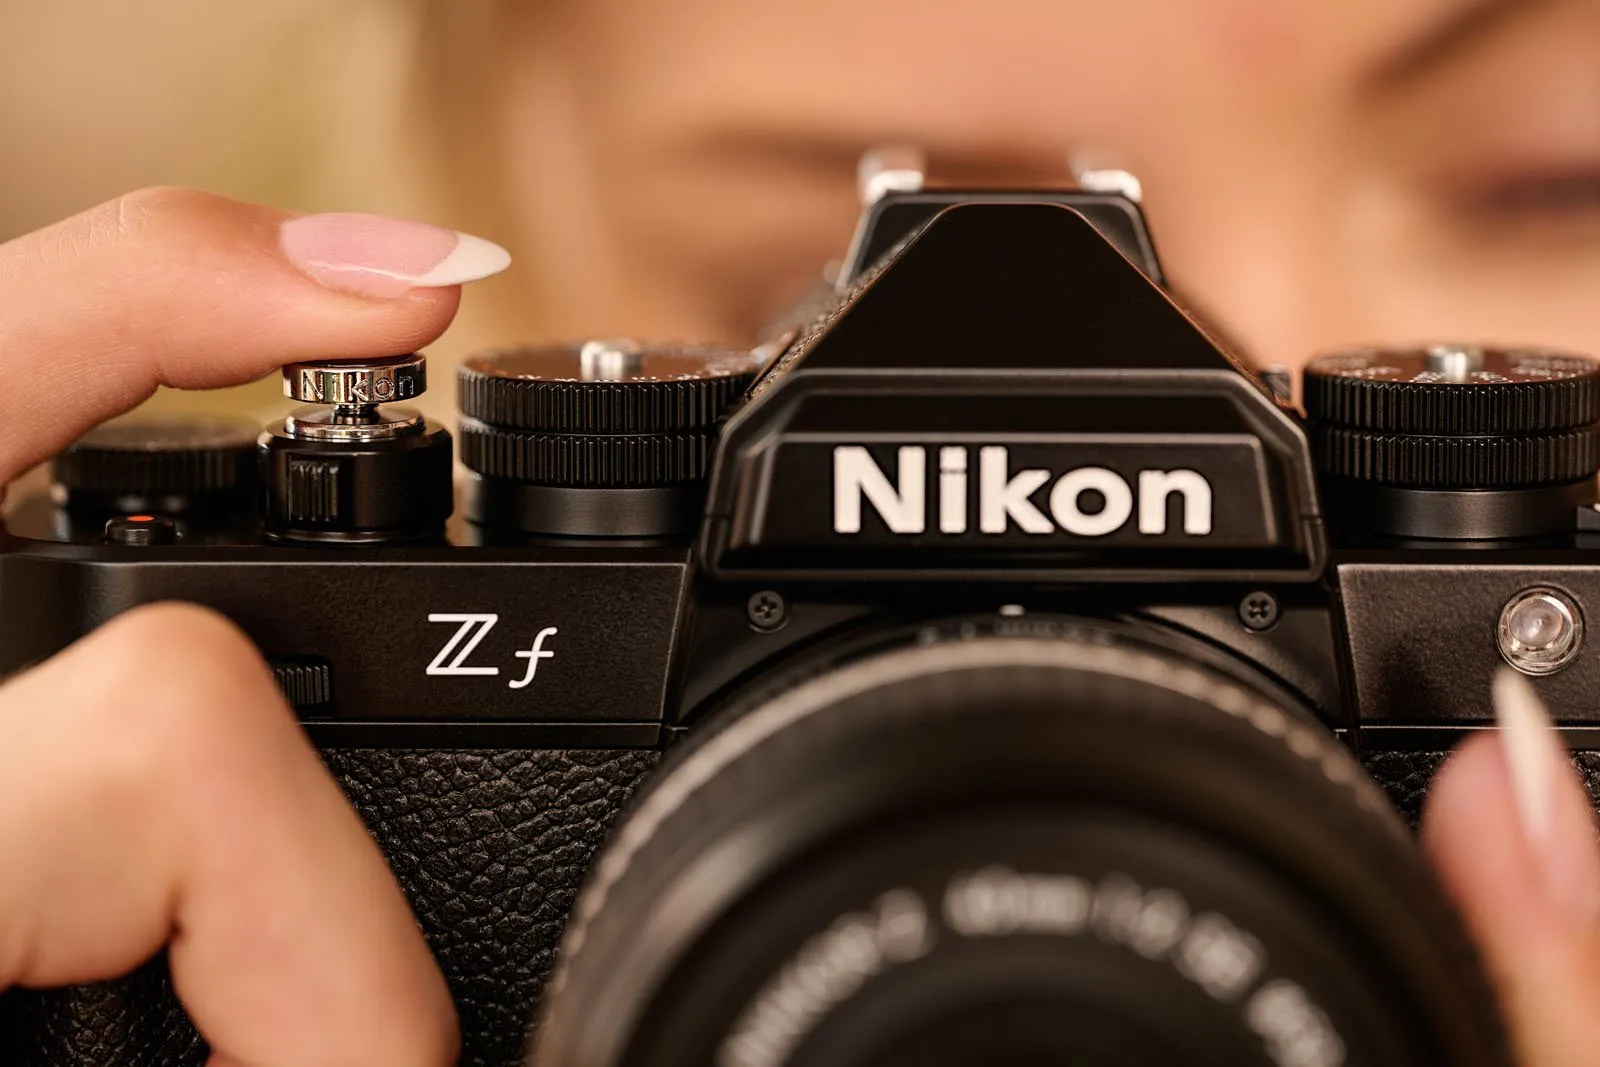 Đặt trước máy ảnh Nikon Zf giá 48.99 triệu đồng và phần quà tặng trị giá 4.8 triệu